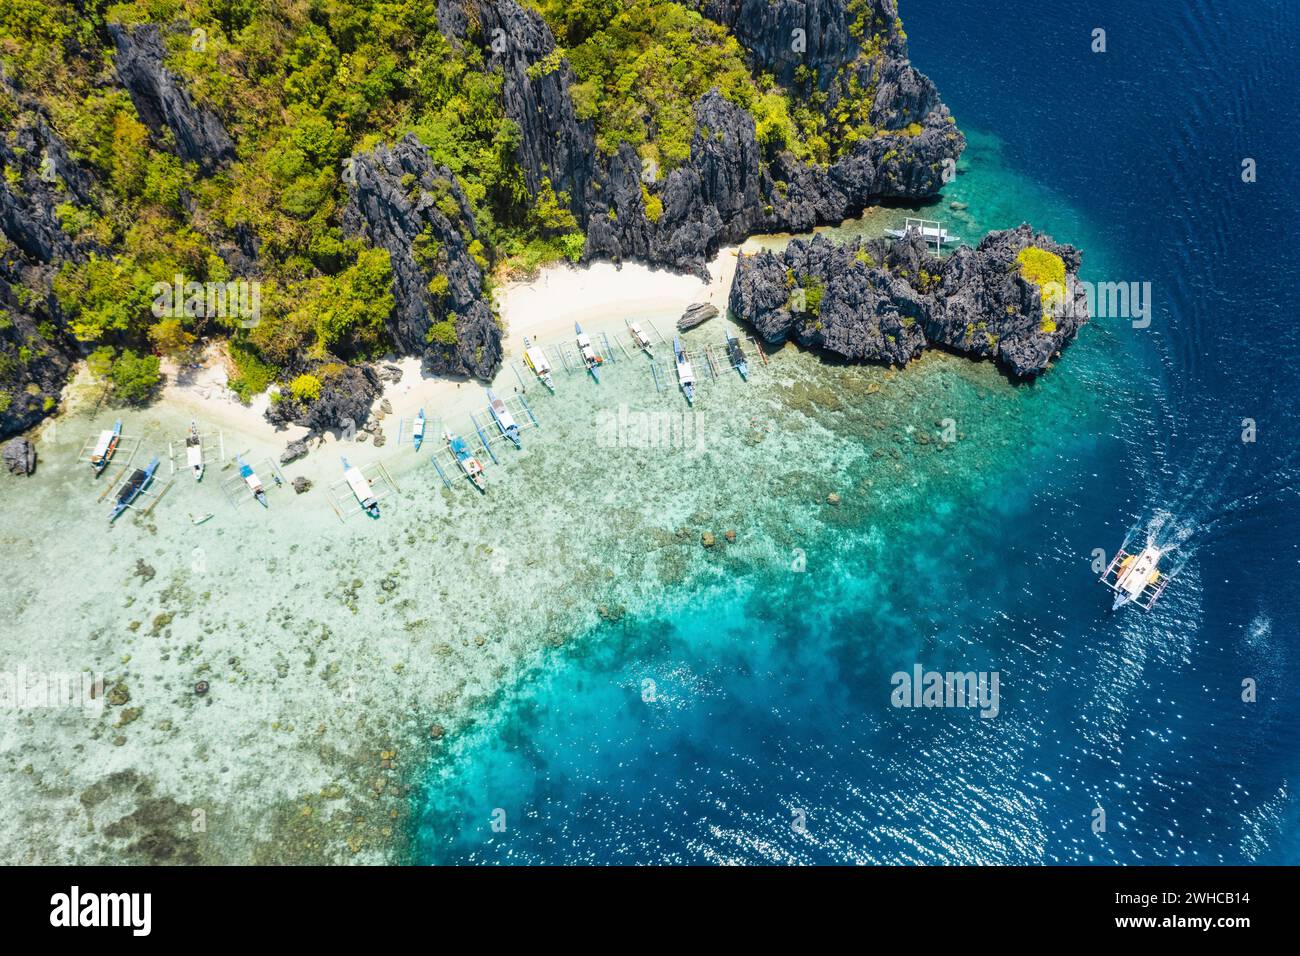 Vista aérea de drones barcos turísticos amarrados en la isla tropical Shimizu. Rocas costeras de piedra caliza, playa de arena blanca en agua azul. El Nido, Palawan, Filipinas. Foto de stock